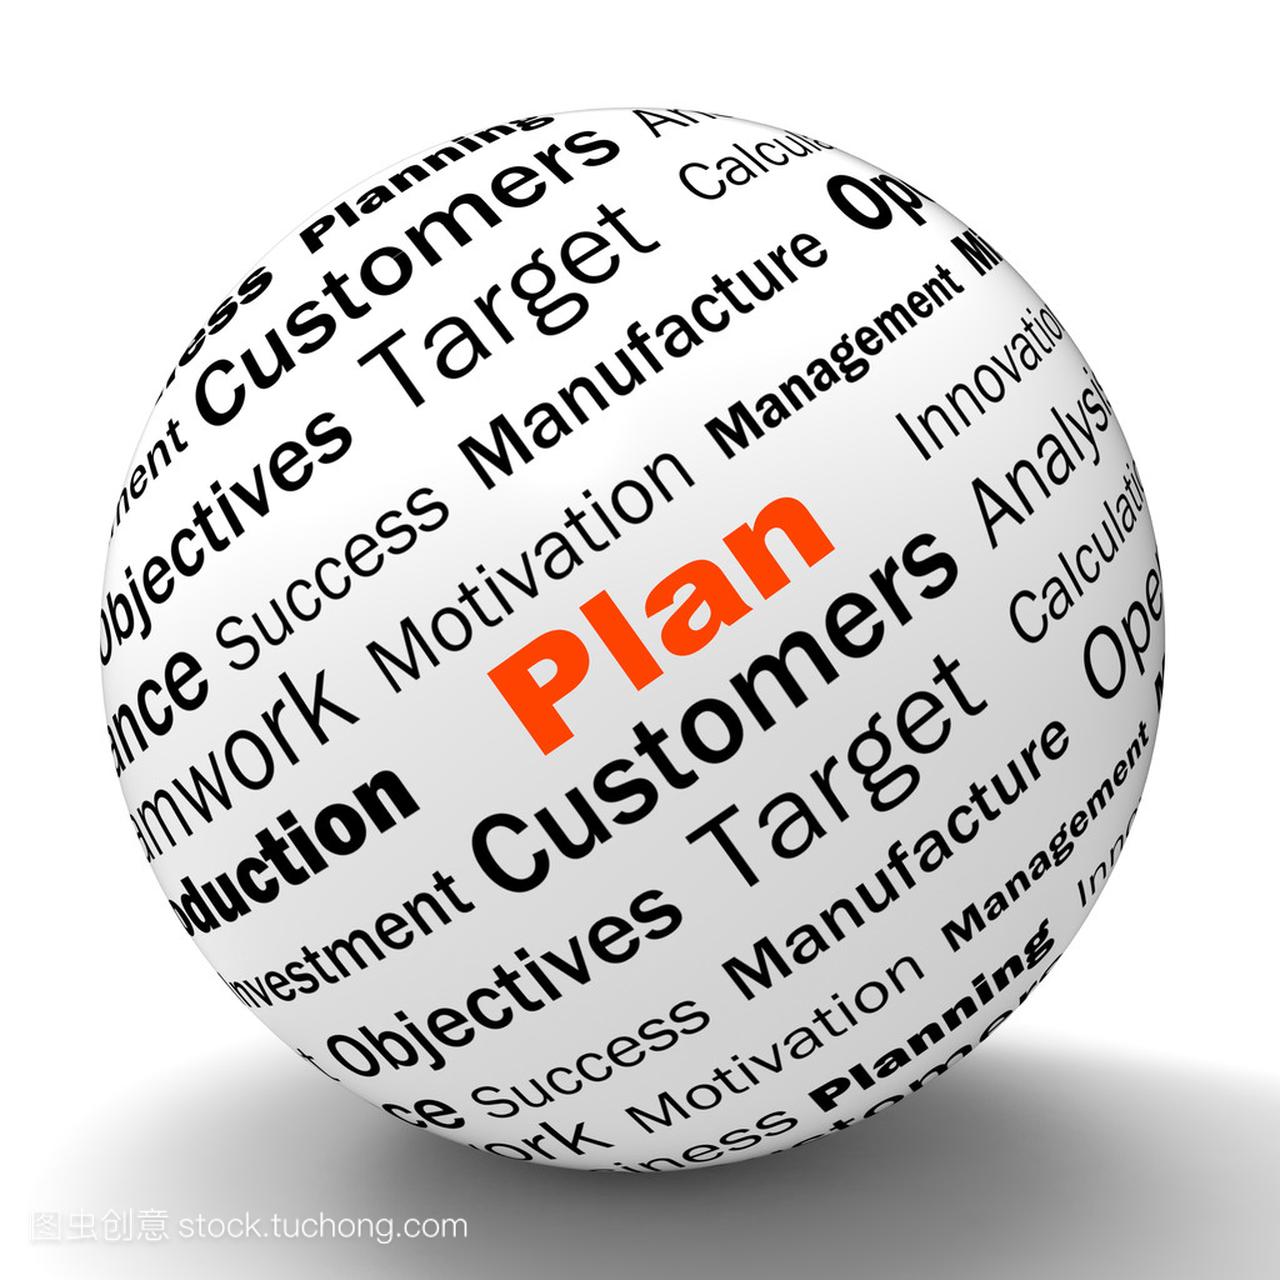 计划范围定义是指规划或目标管理